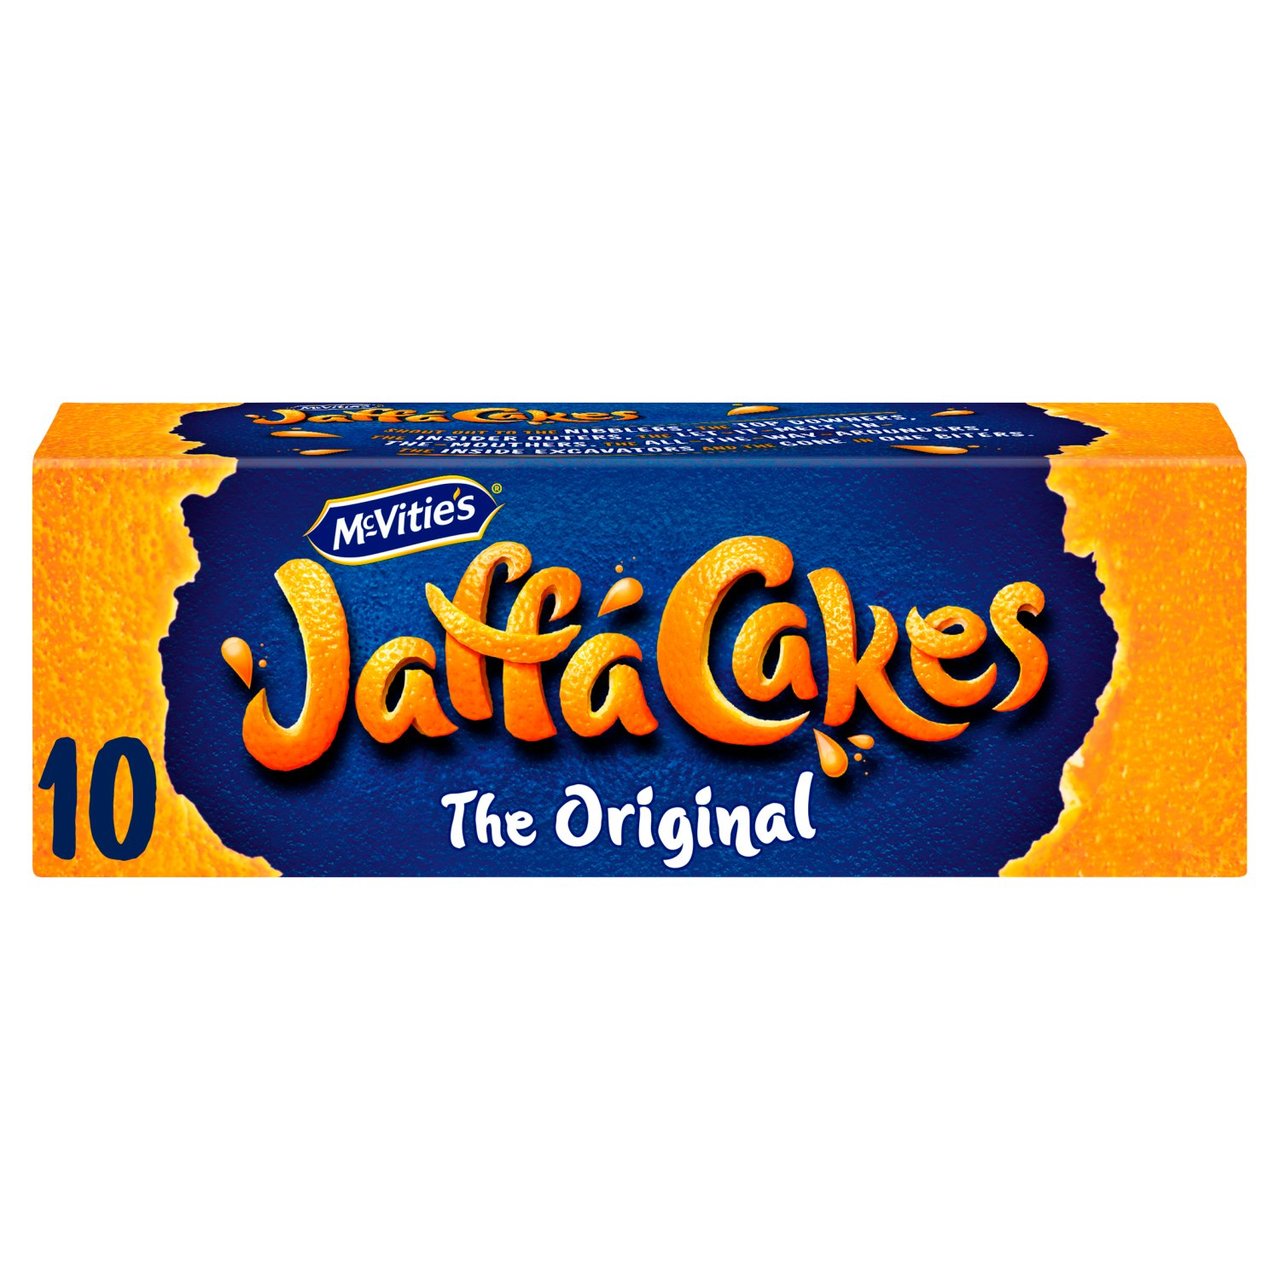 McVitie's Jaffa Cakes 10 Pack 125g